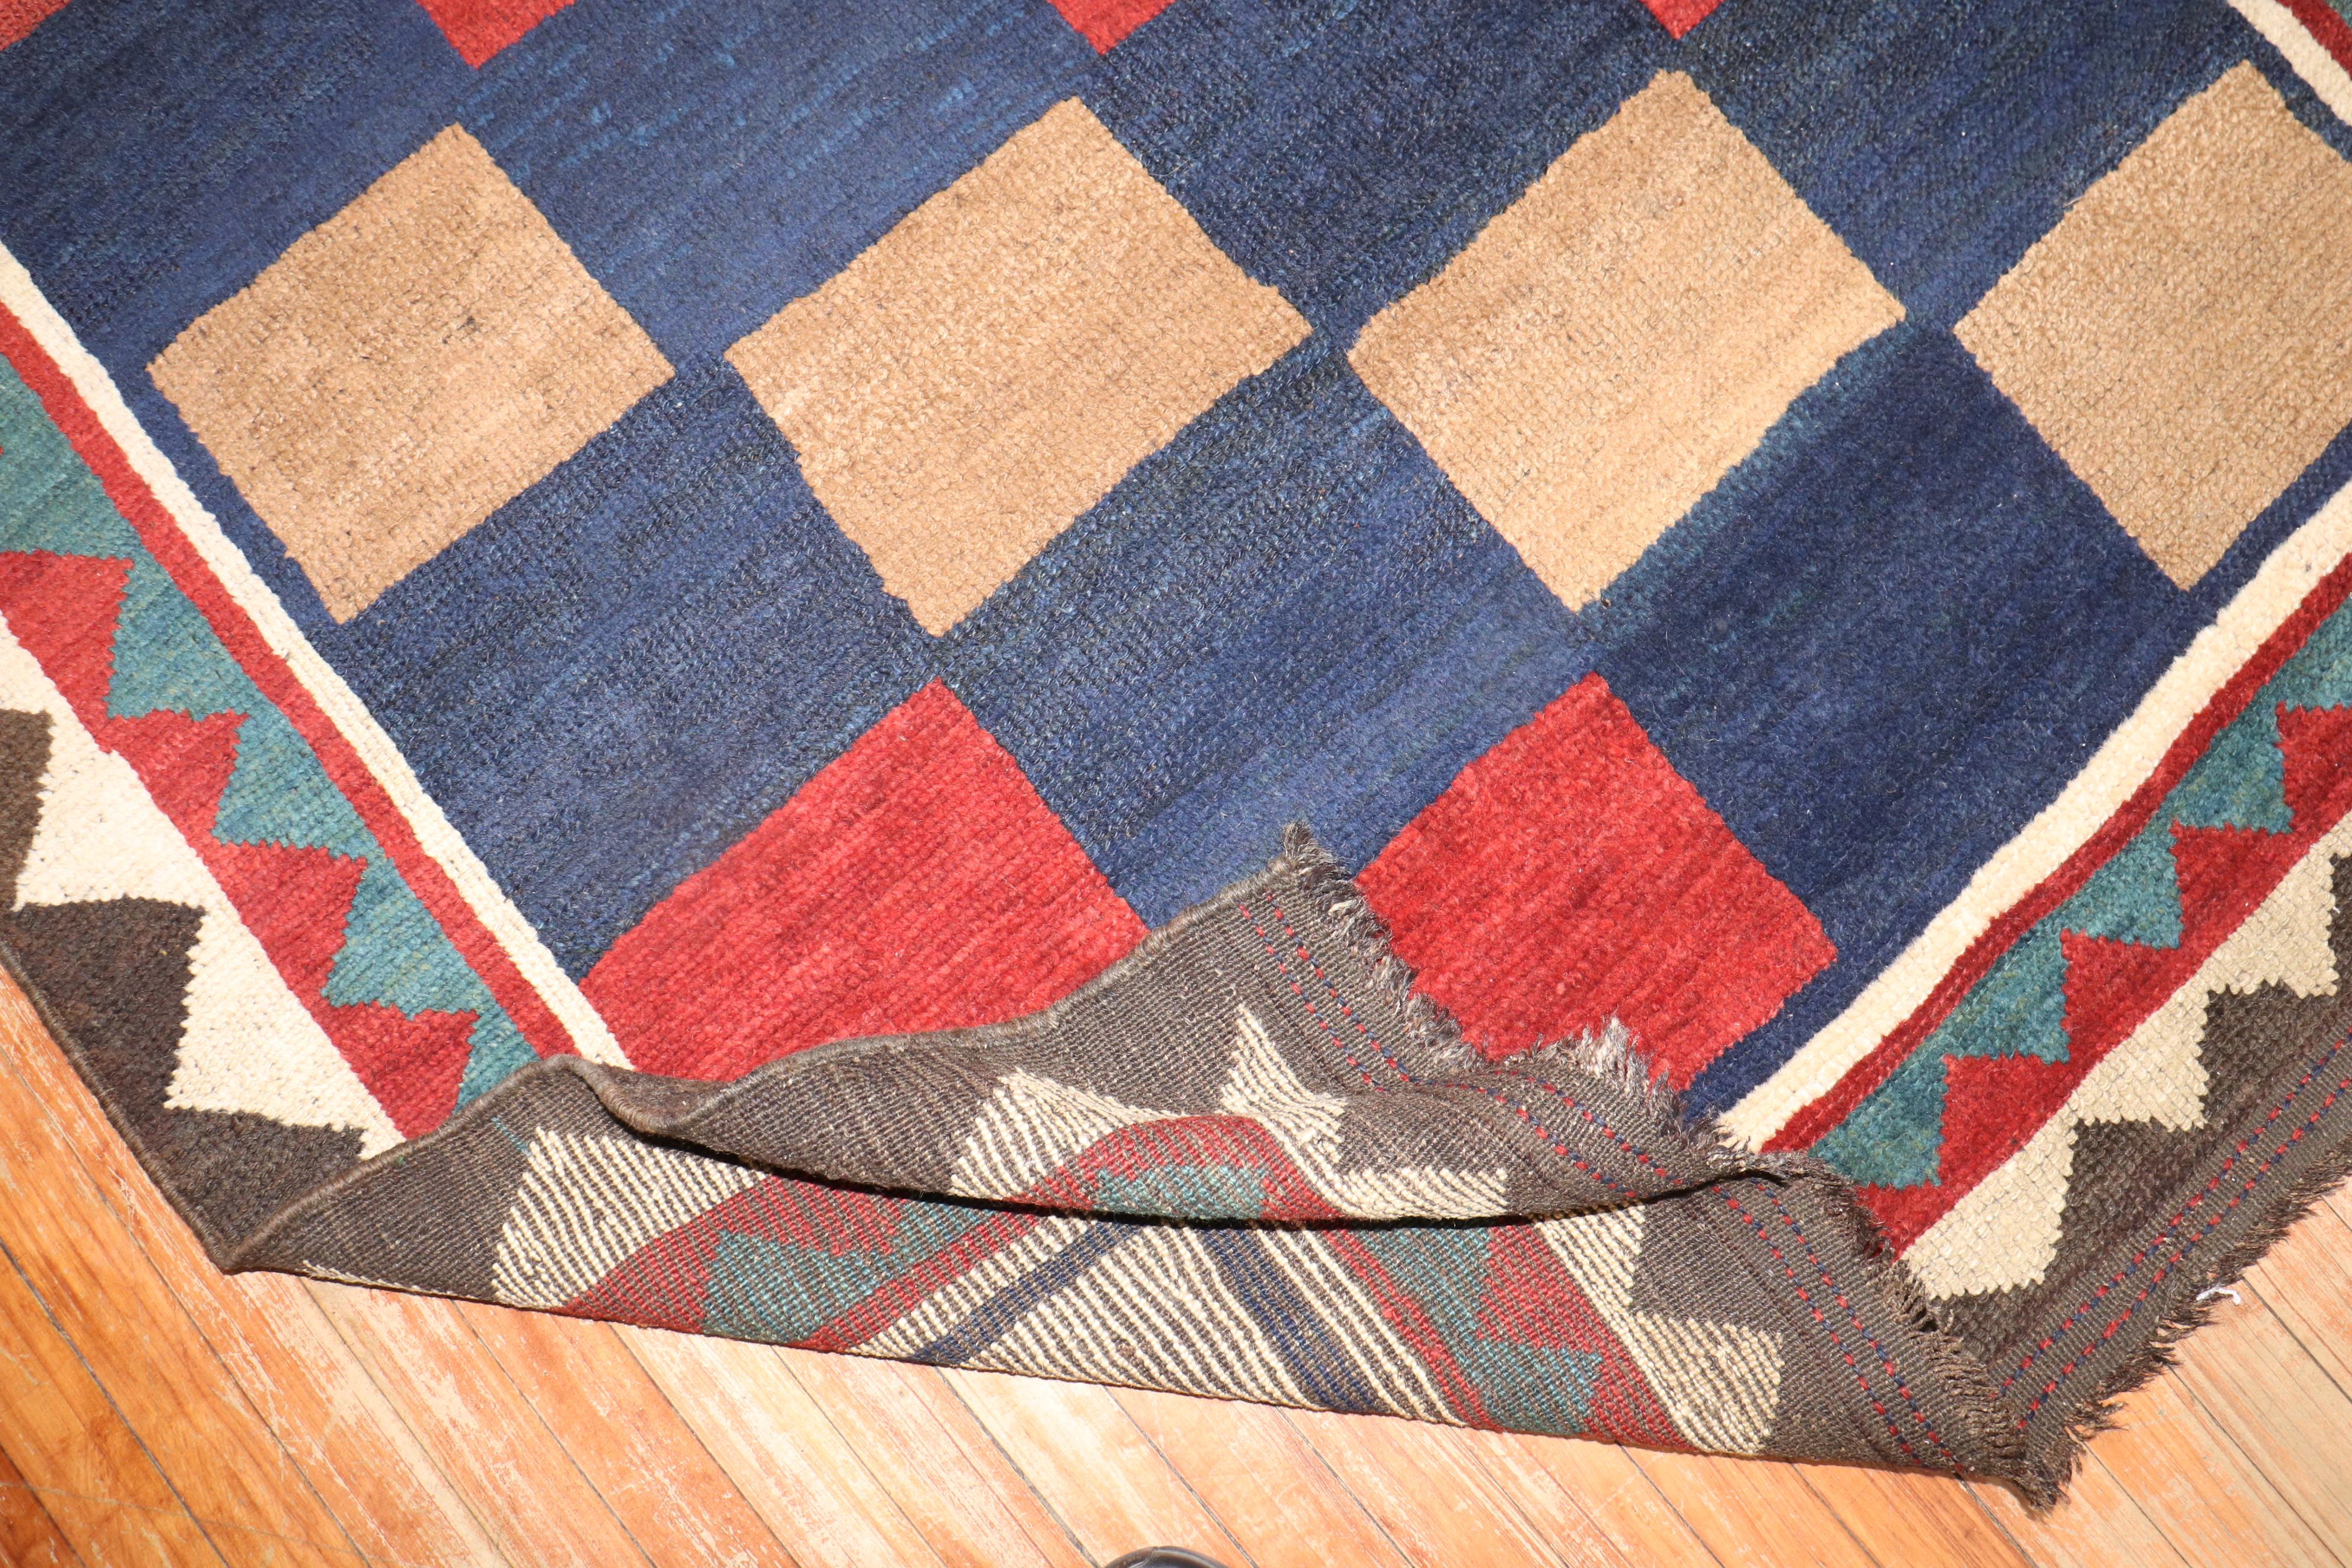 Persischer Gabbeh-Teppich aus der Mitte des 20. Jahrhunderts mit einem sich überall wiederholenden kastenförmigen Muster

Maße: 4'11' x 7'.